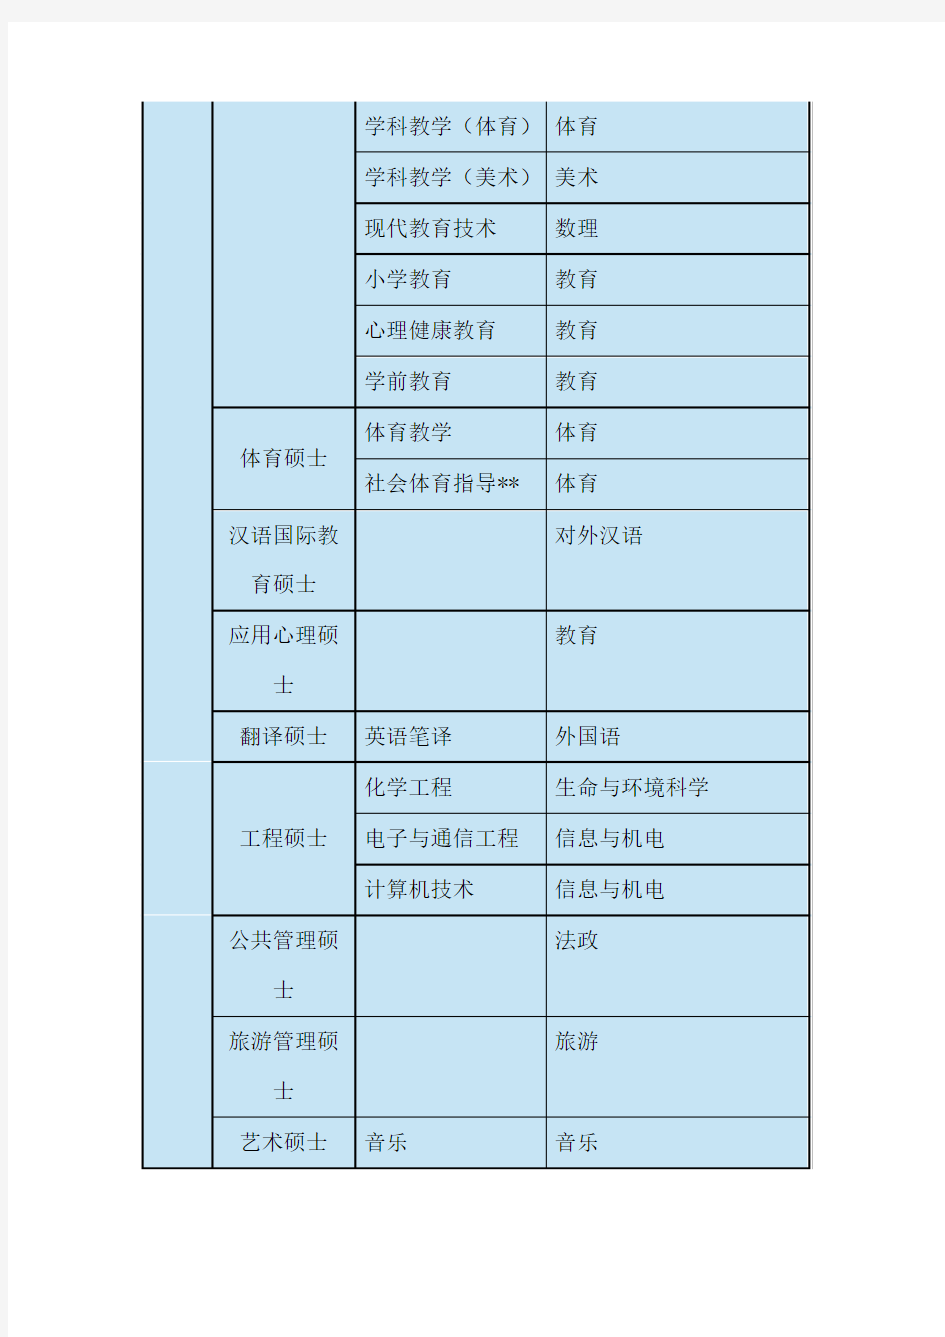 上海师范大学硕士点(专业学位)一览表